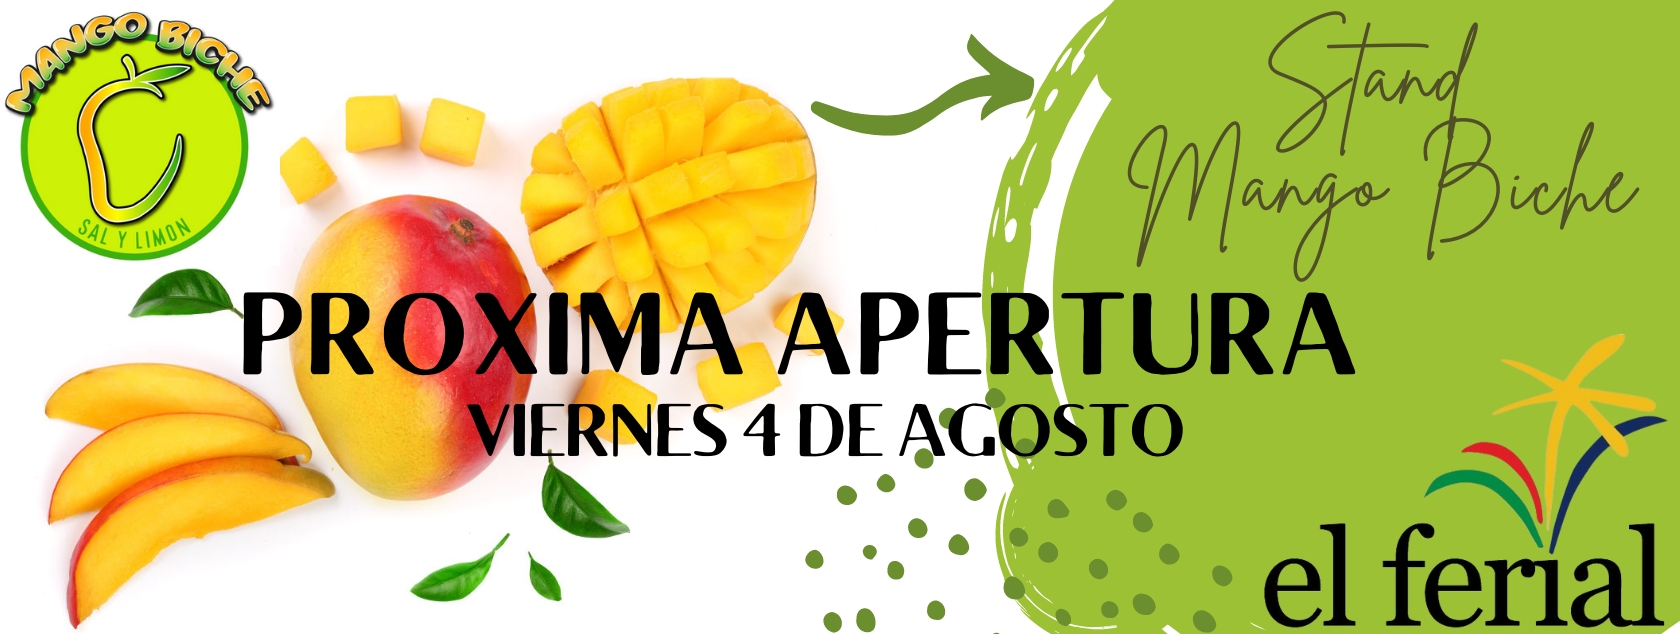 Próxima apertura de Mango Biche en CC El Ferial